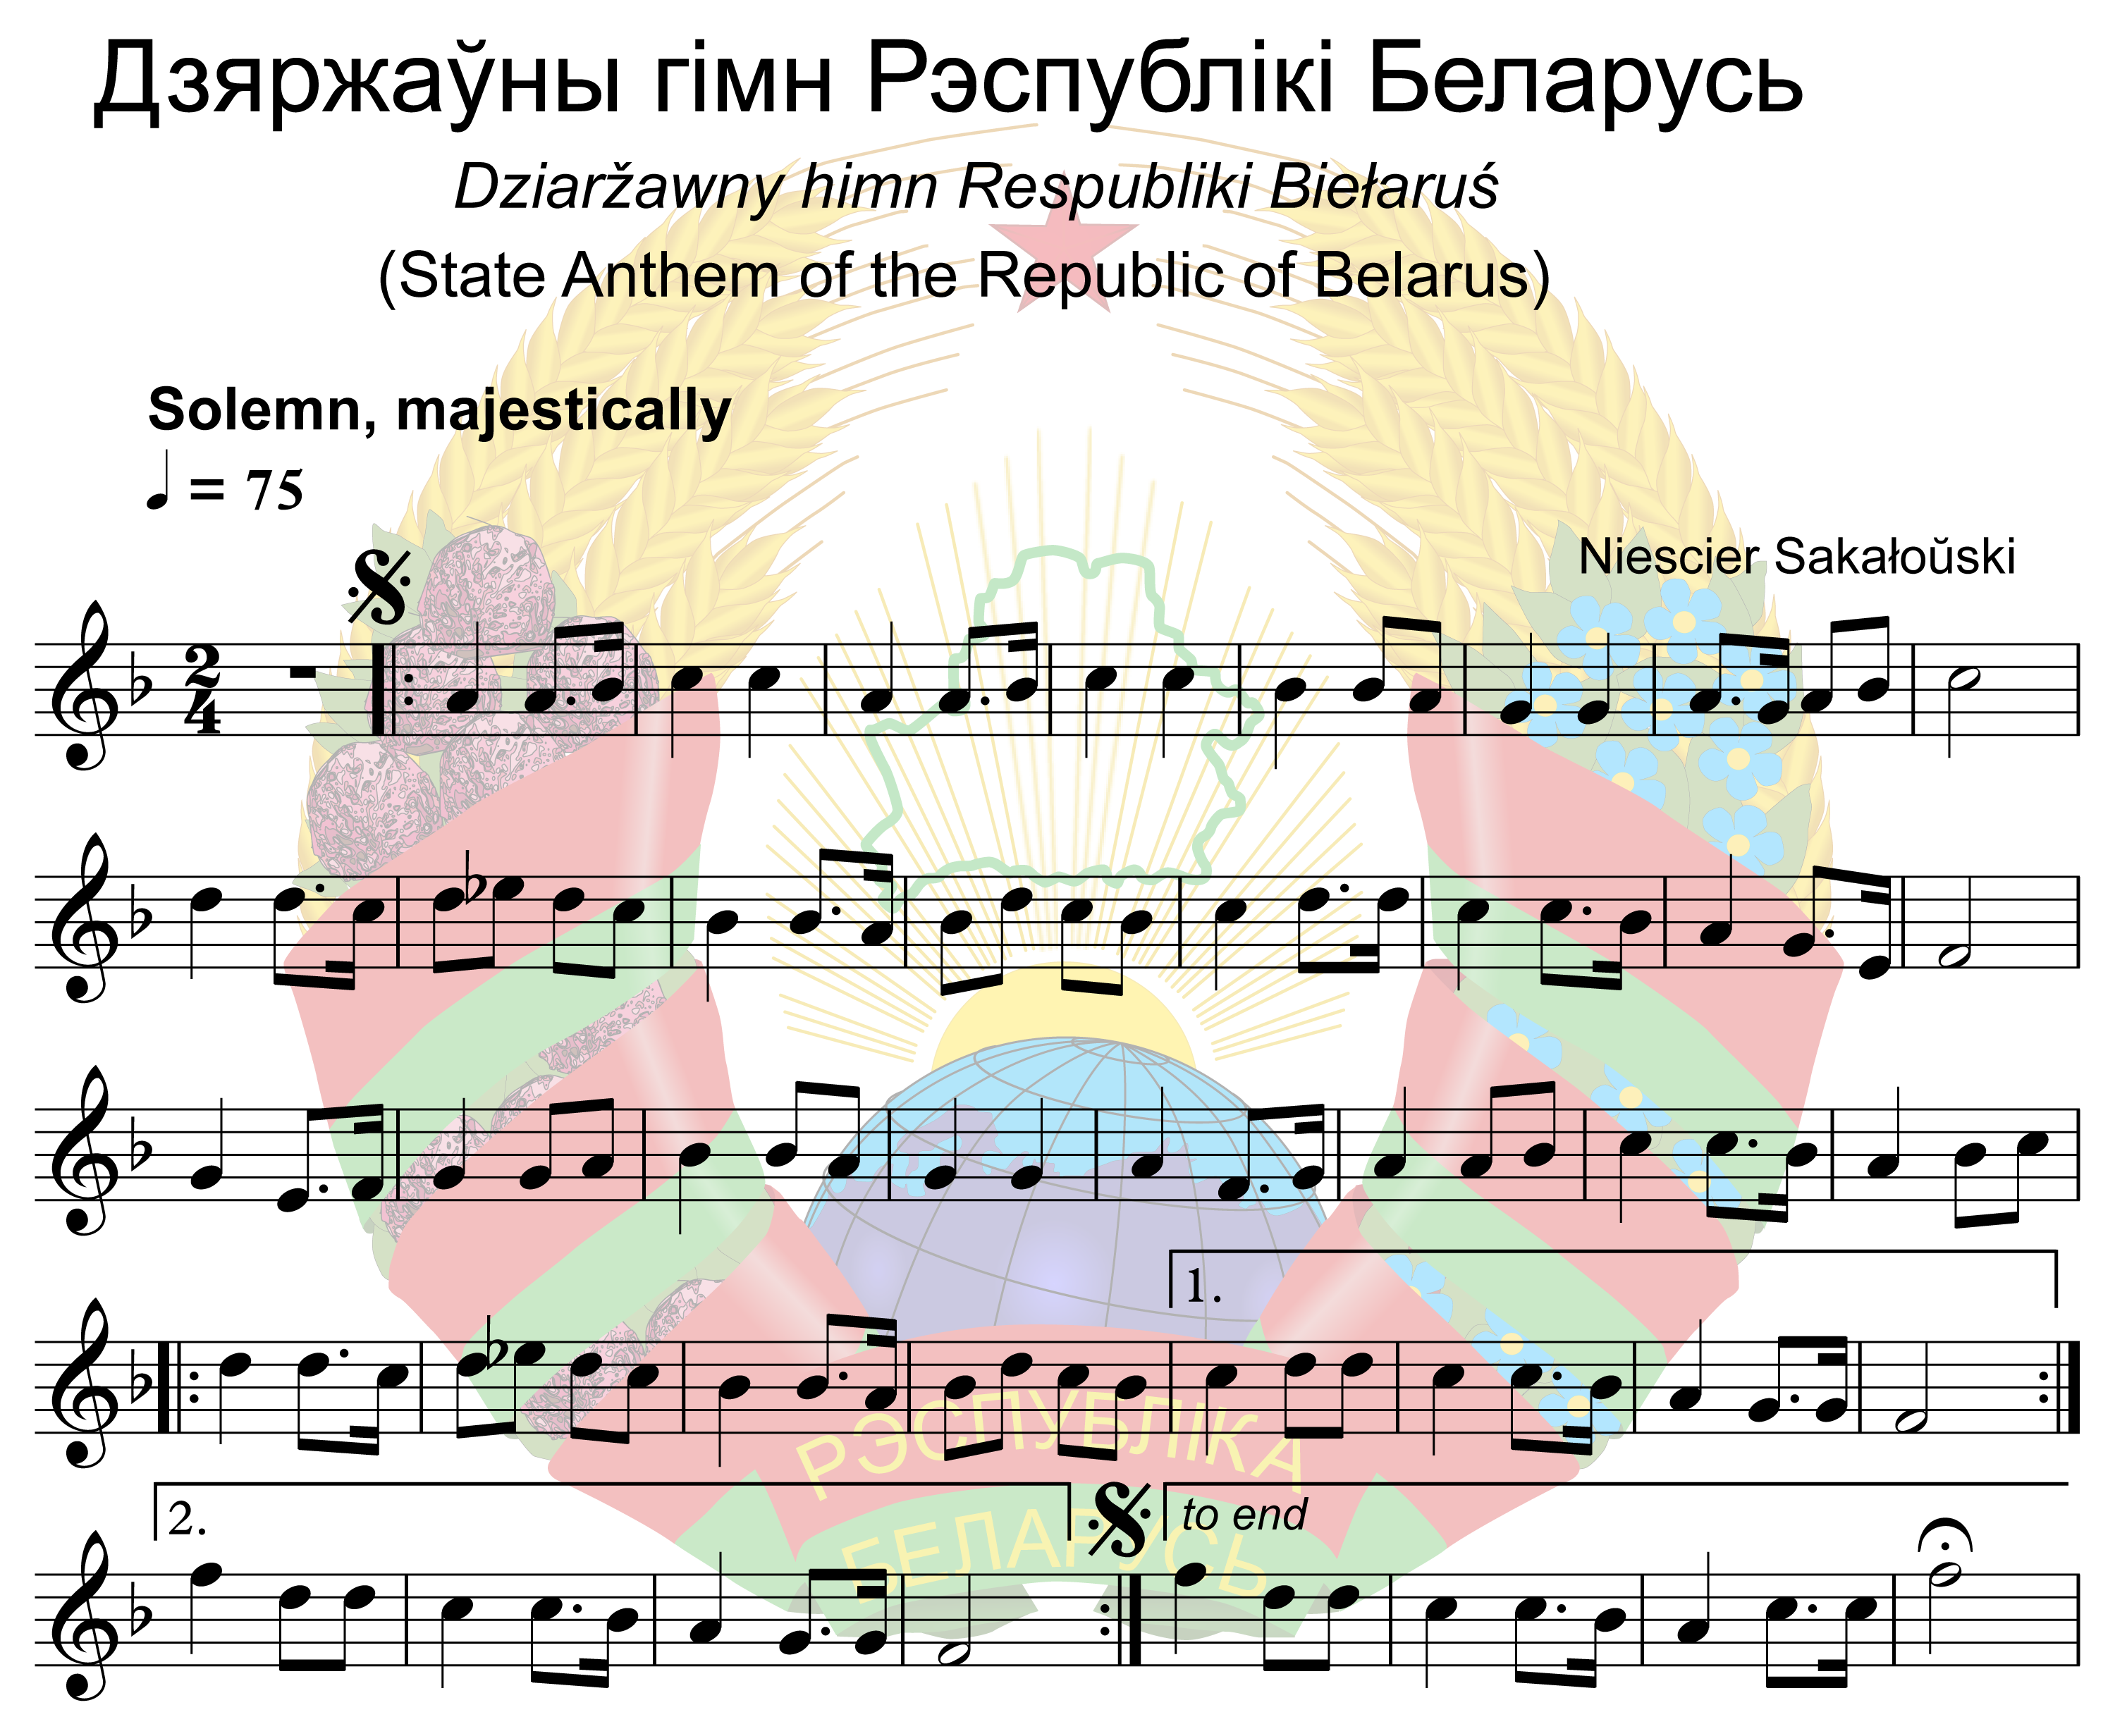 白俄羅斯國歌